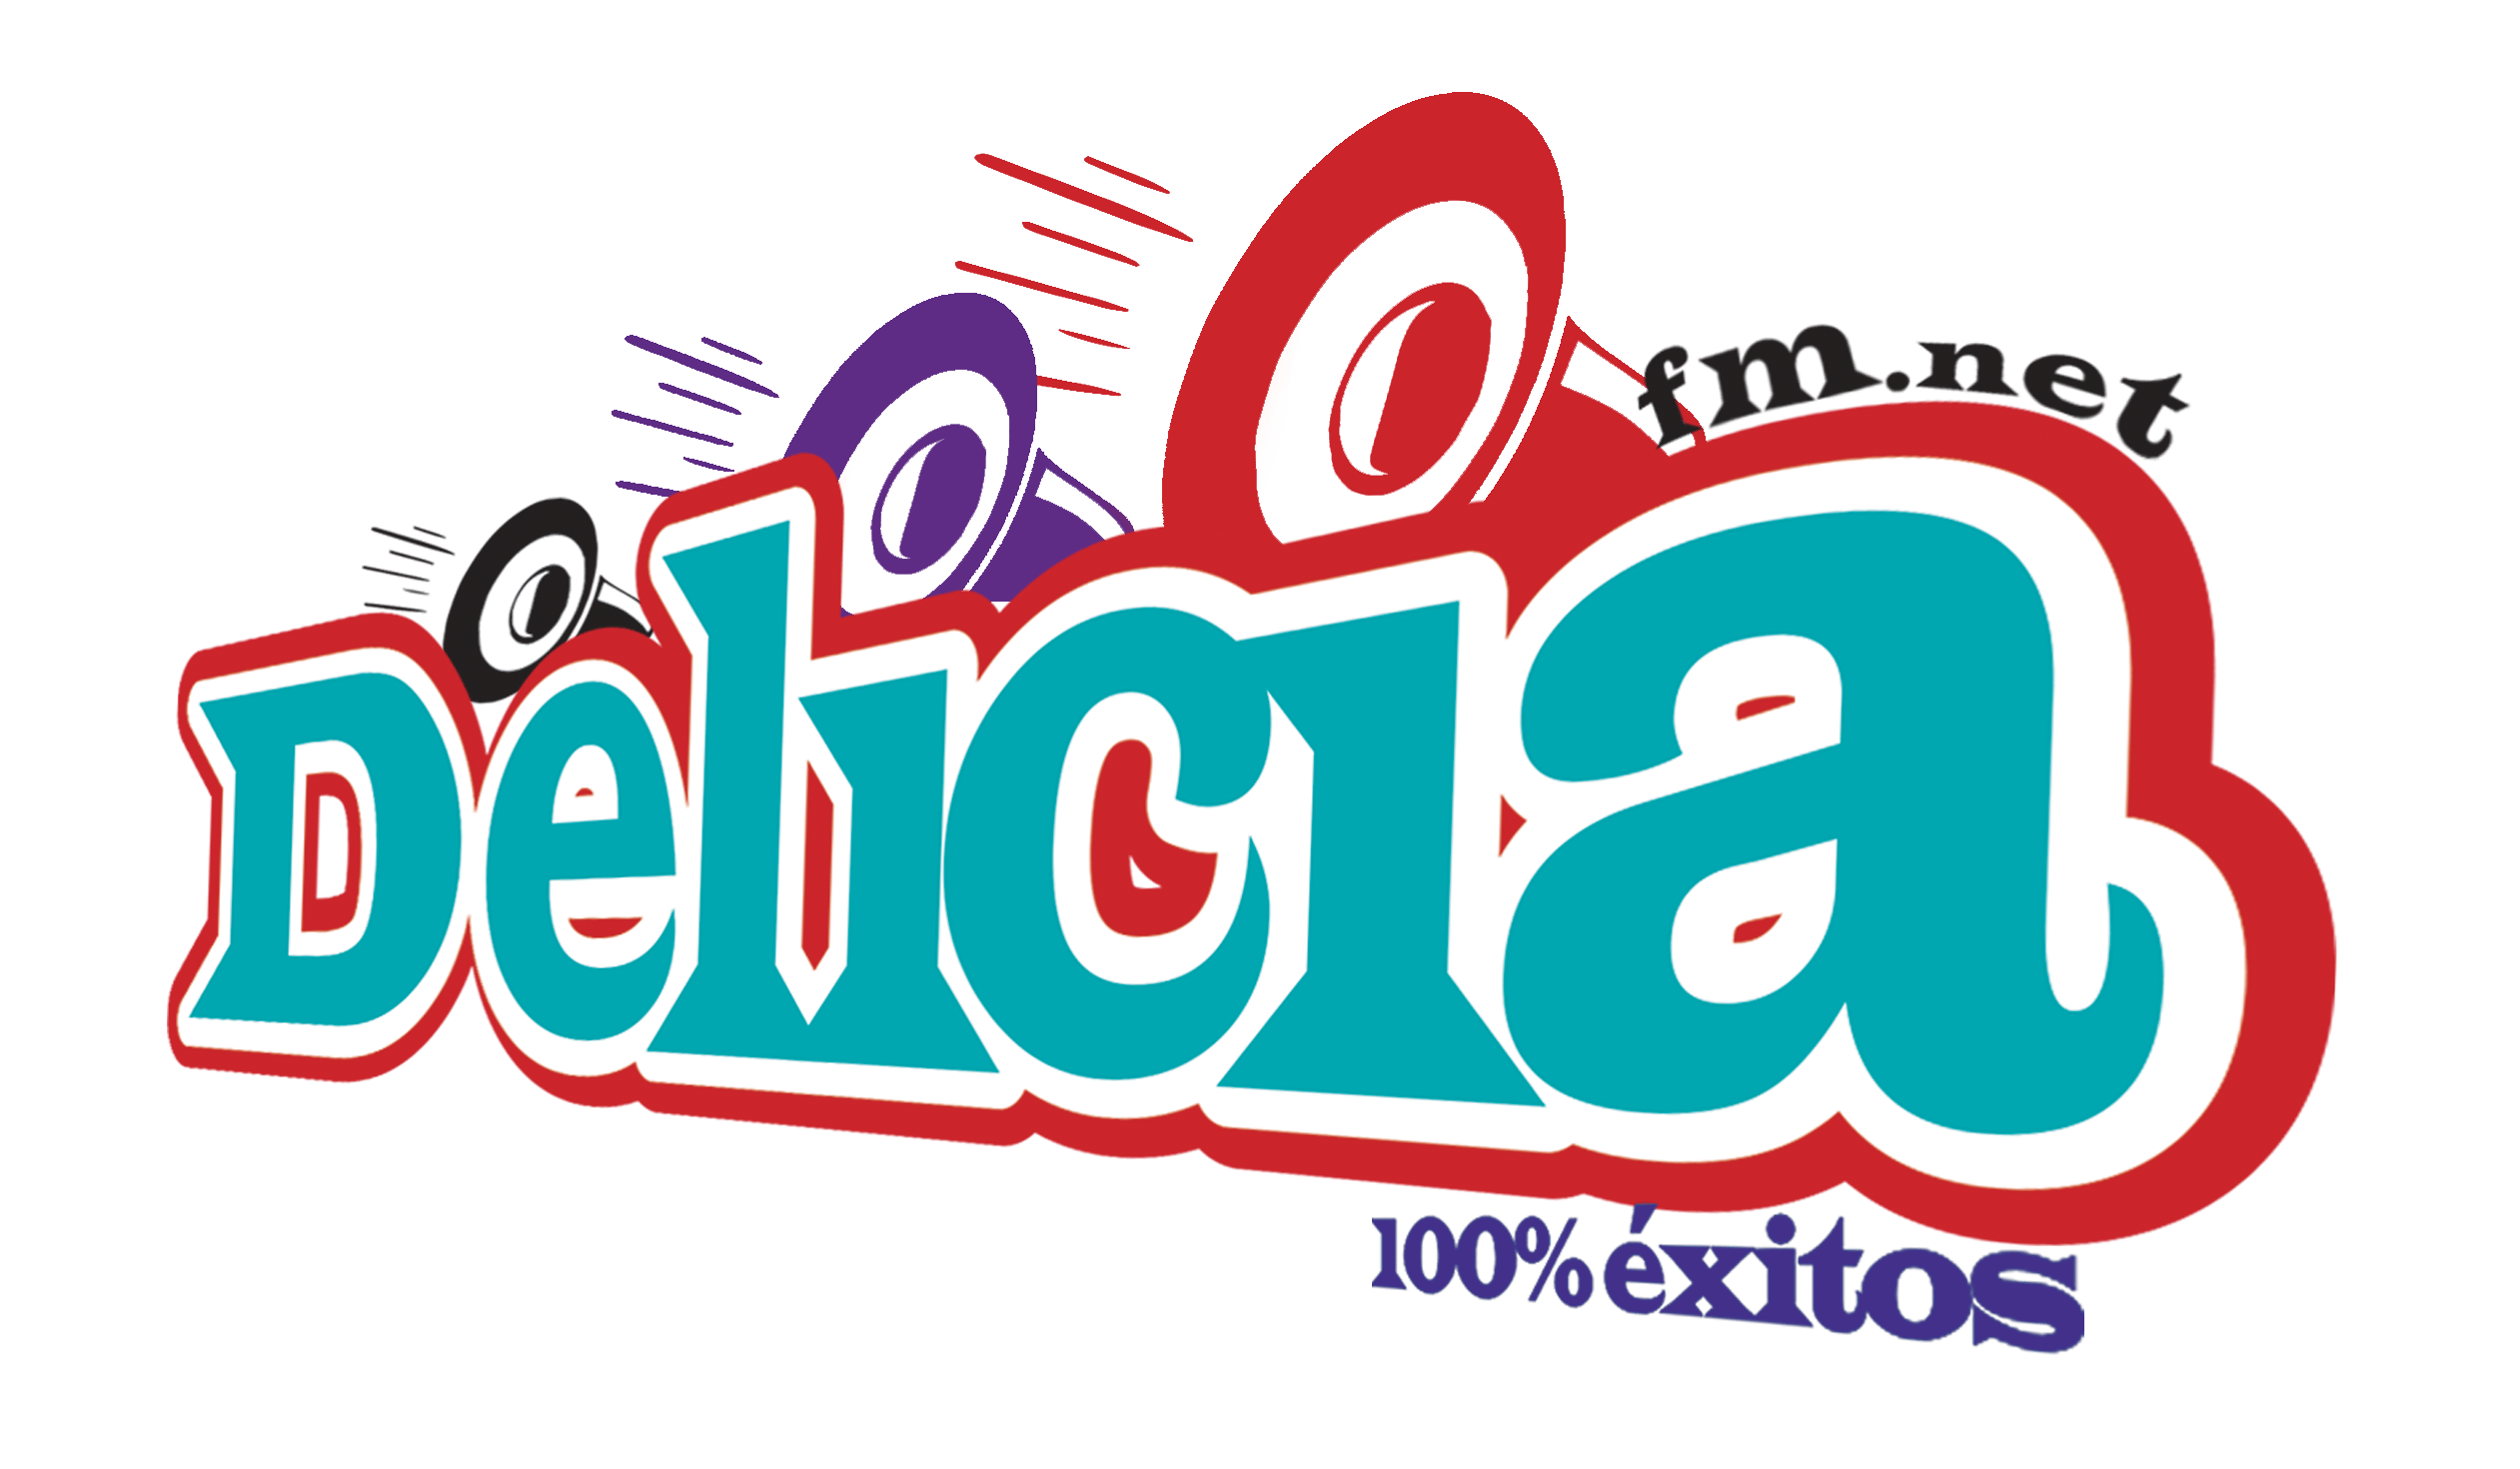 Logo Delicia2 fm